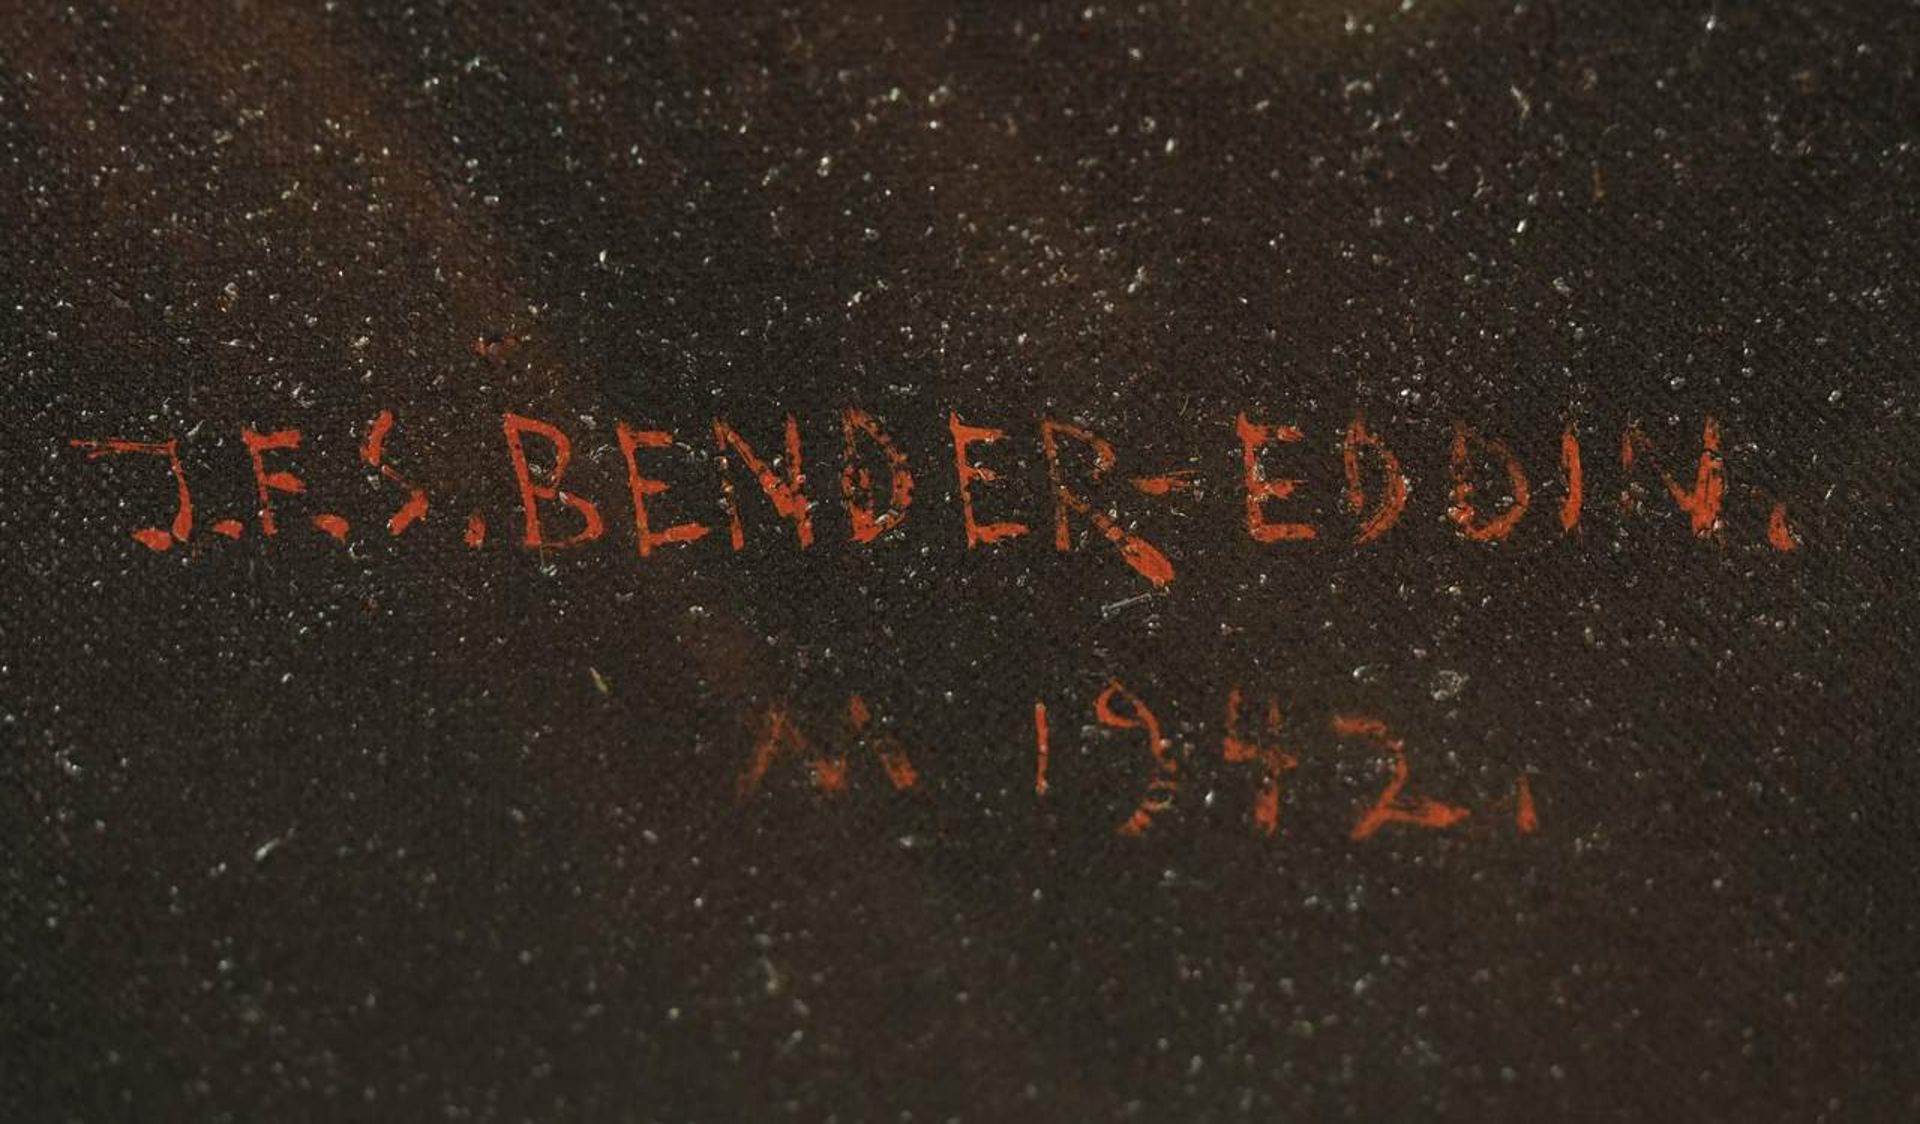 BENDER-EDDIN, J.F.S. - Image 8 of 8